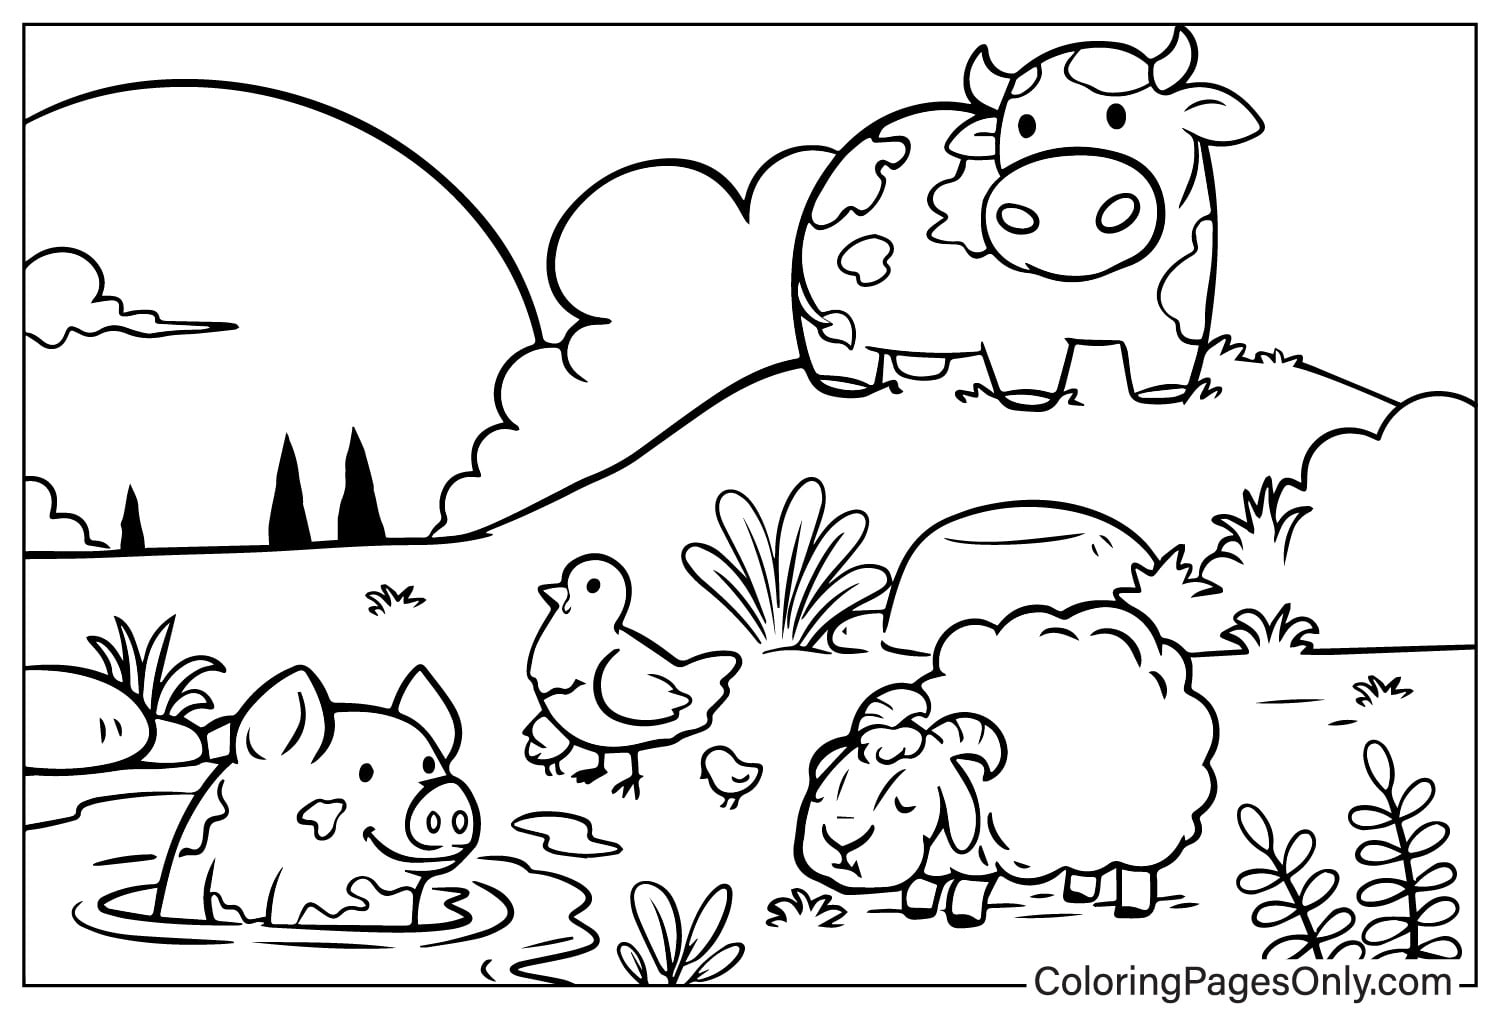 Kühe, Schweine, Schafe, Hühner auf dem Bauernhof von Farm Animal